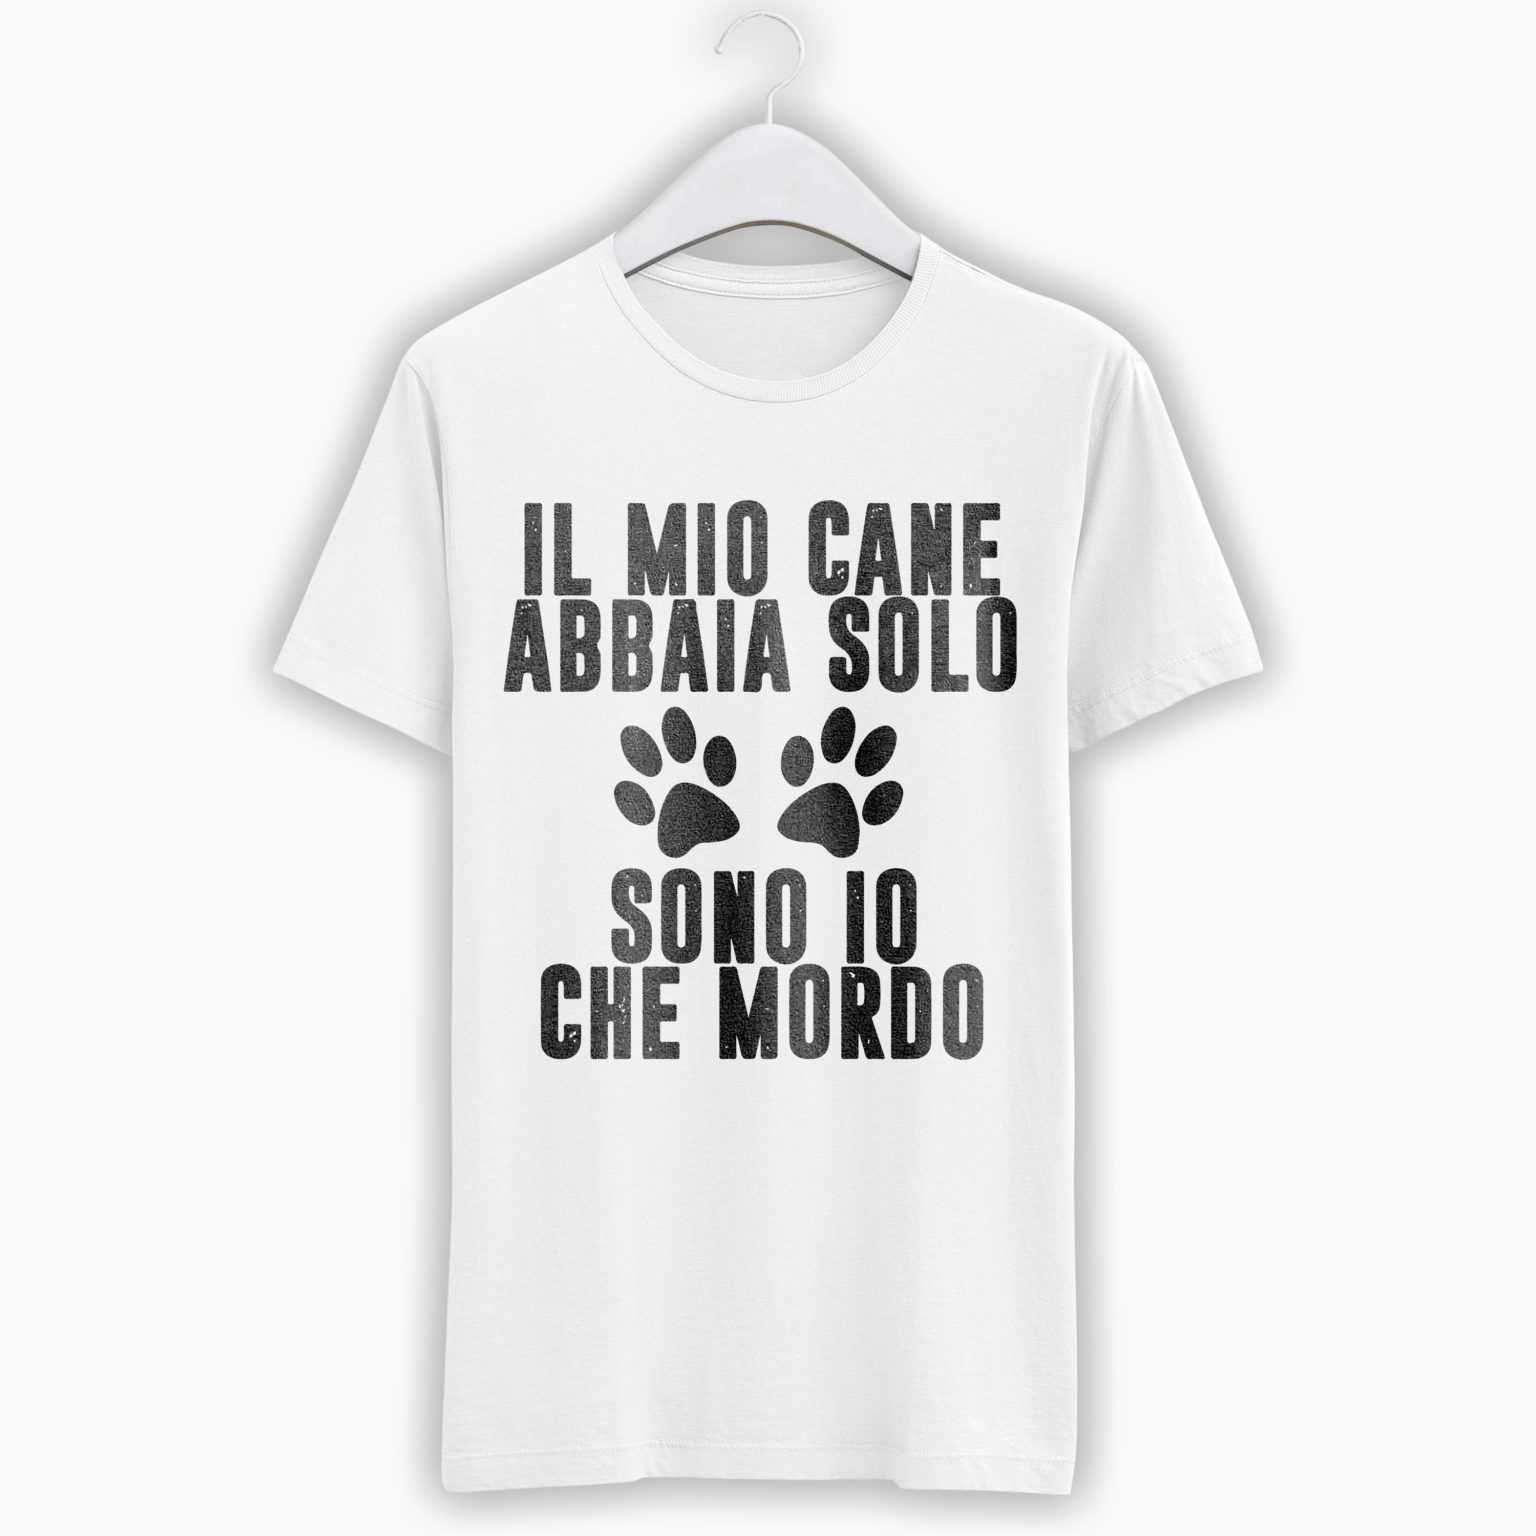 T-Shirt Unisex – Il Mio Cane Abbaia Solo, Sono Io Che Mordo